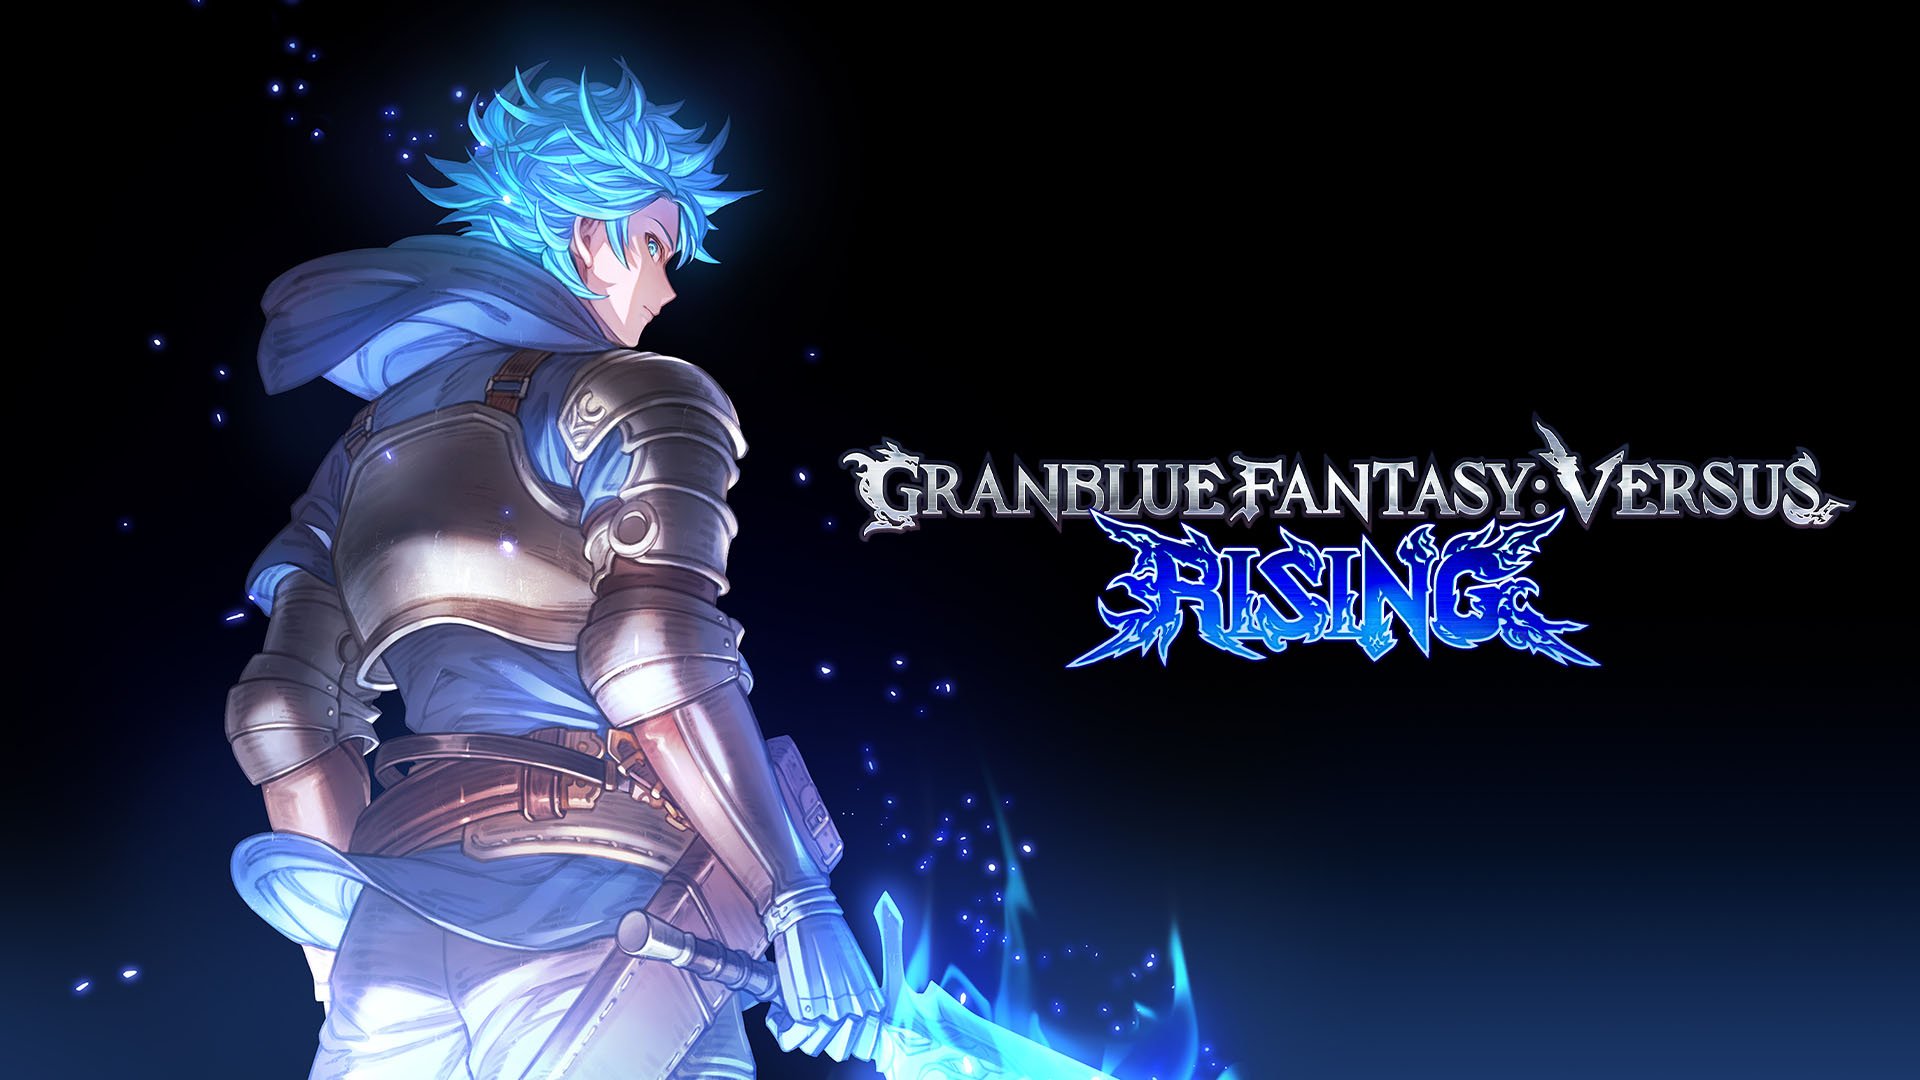 Granblue Fantasy: Versus Rising wurde für PS5, PS4 und PC angekündigt